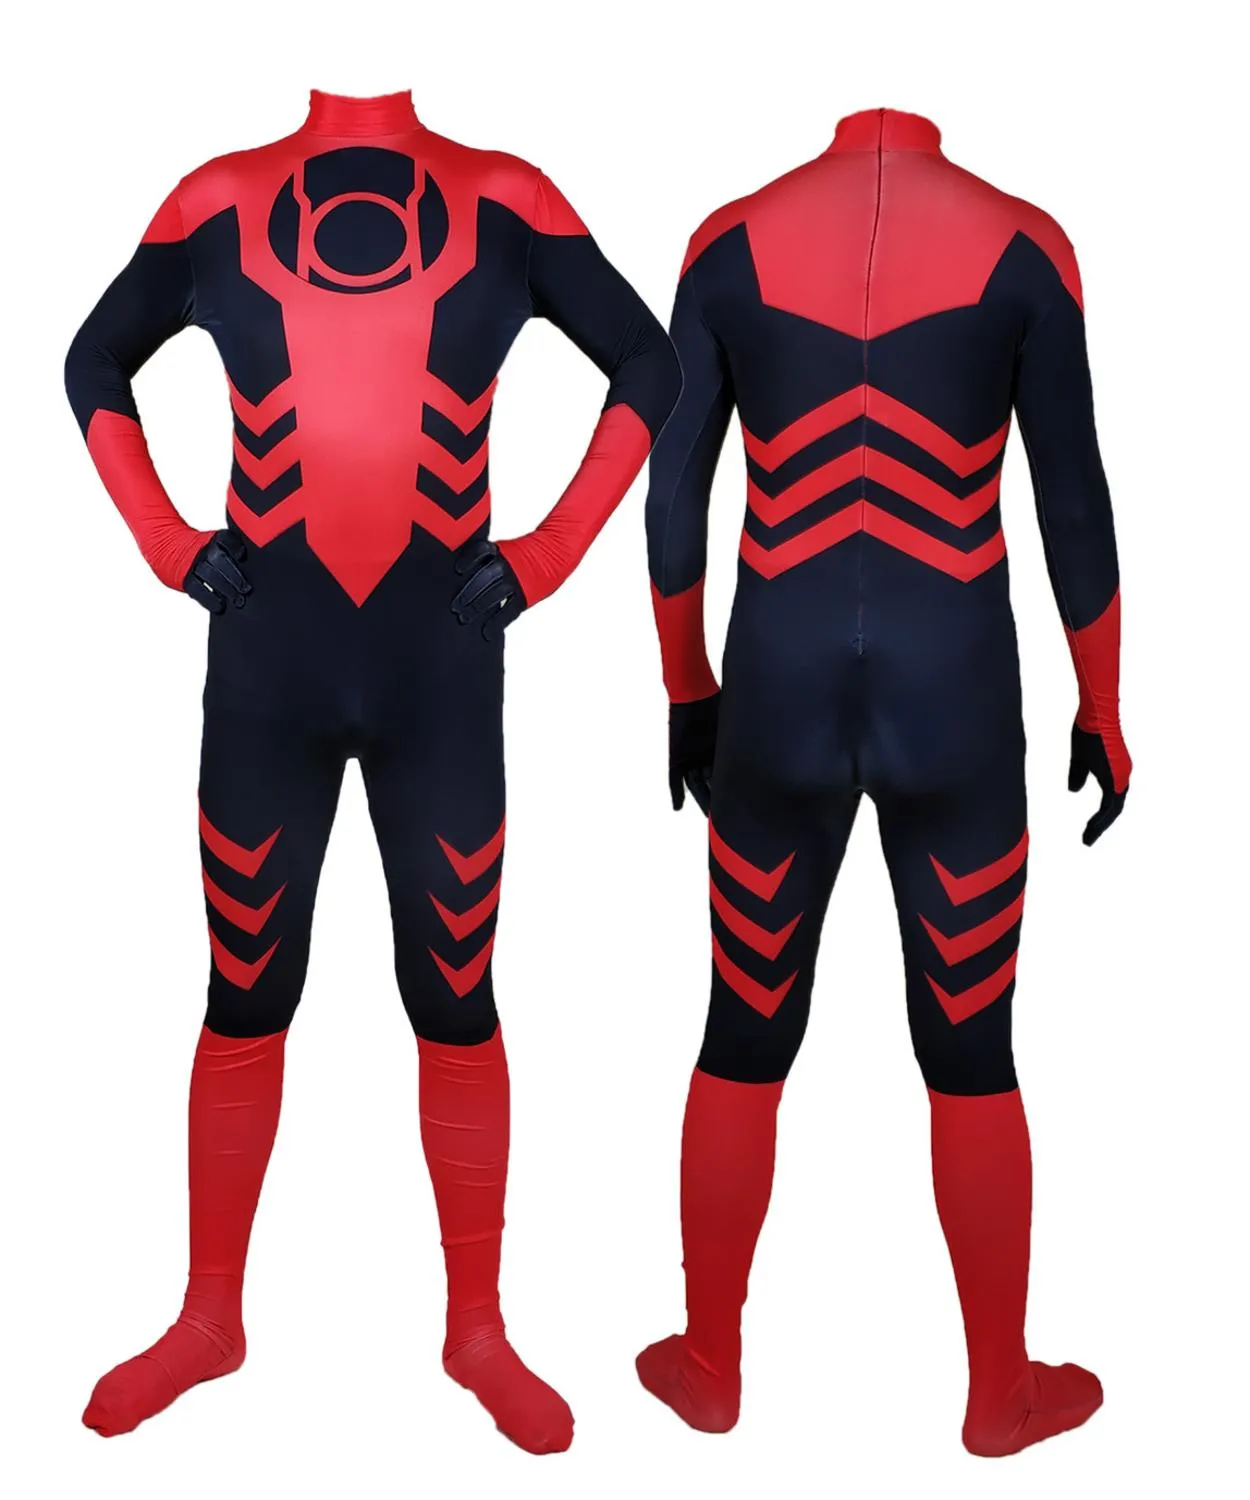 Erwachsene Kinder Red Lantern Cosplay Kostüm Halloween Zentai Bodysuit Mann Jungen Mann Superheldenanzug